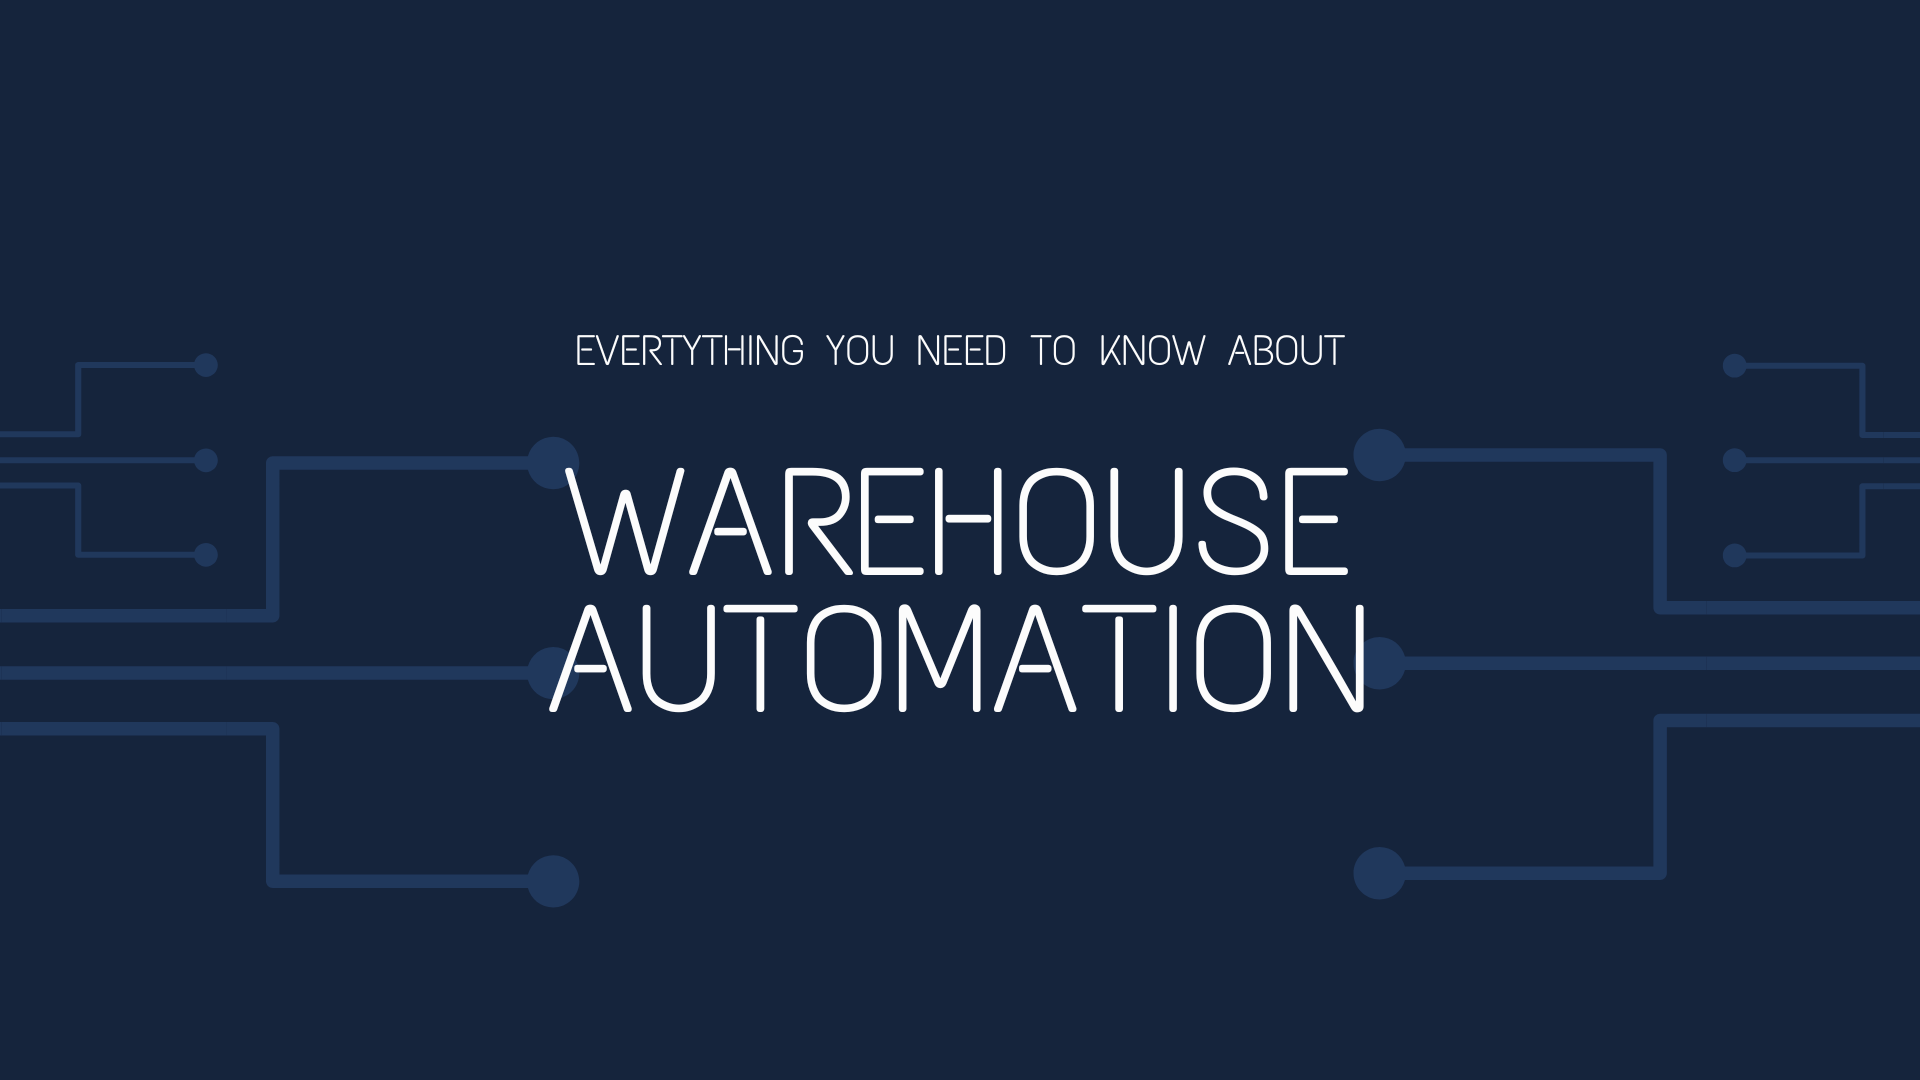 Все, что вам нужно знать об автоматизации склада